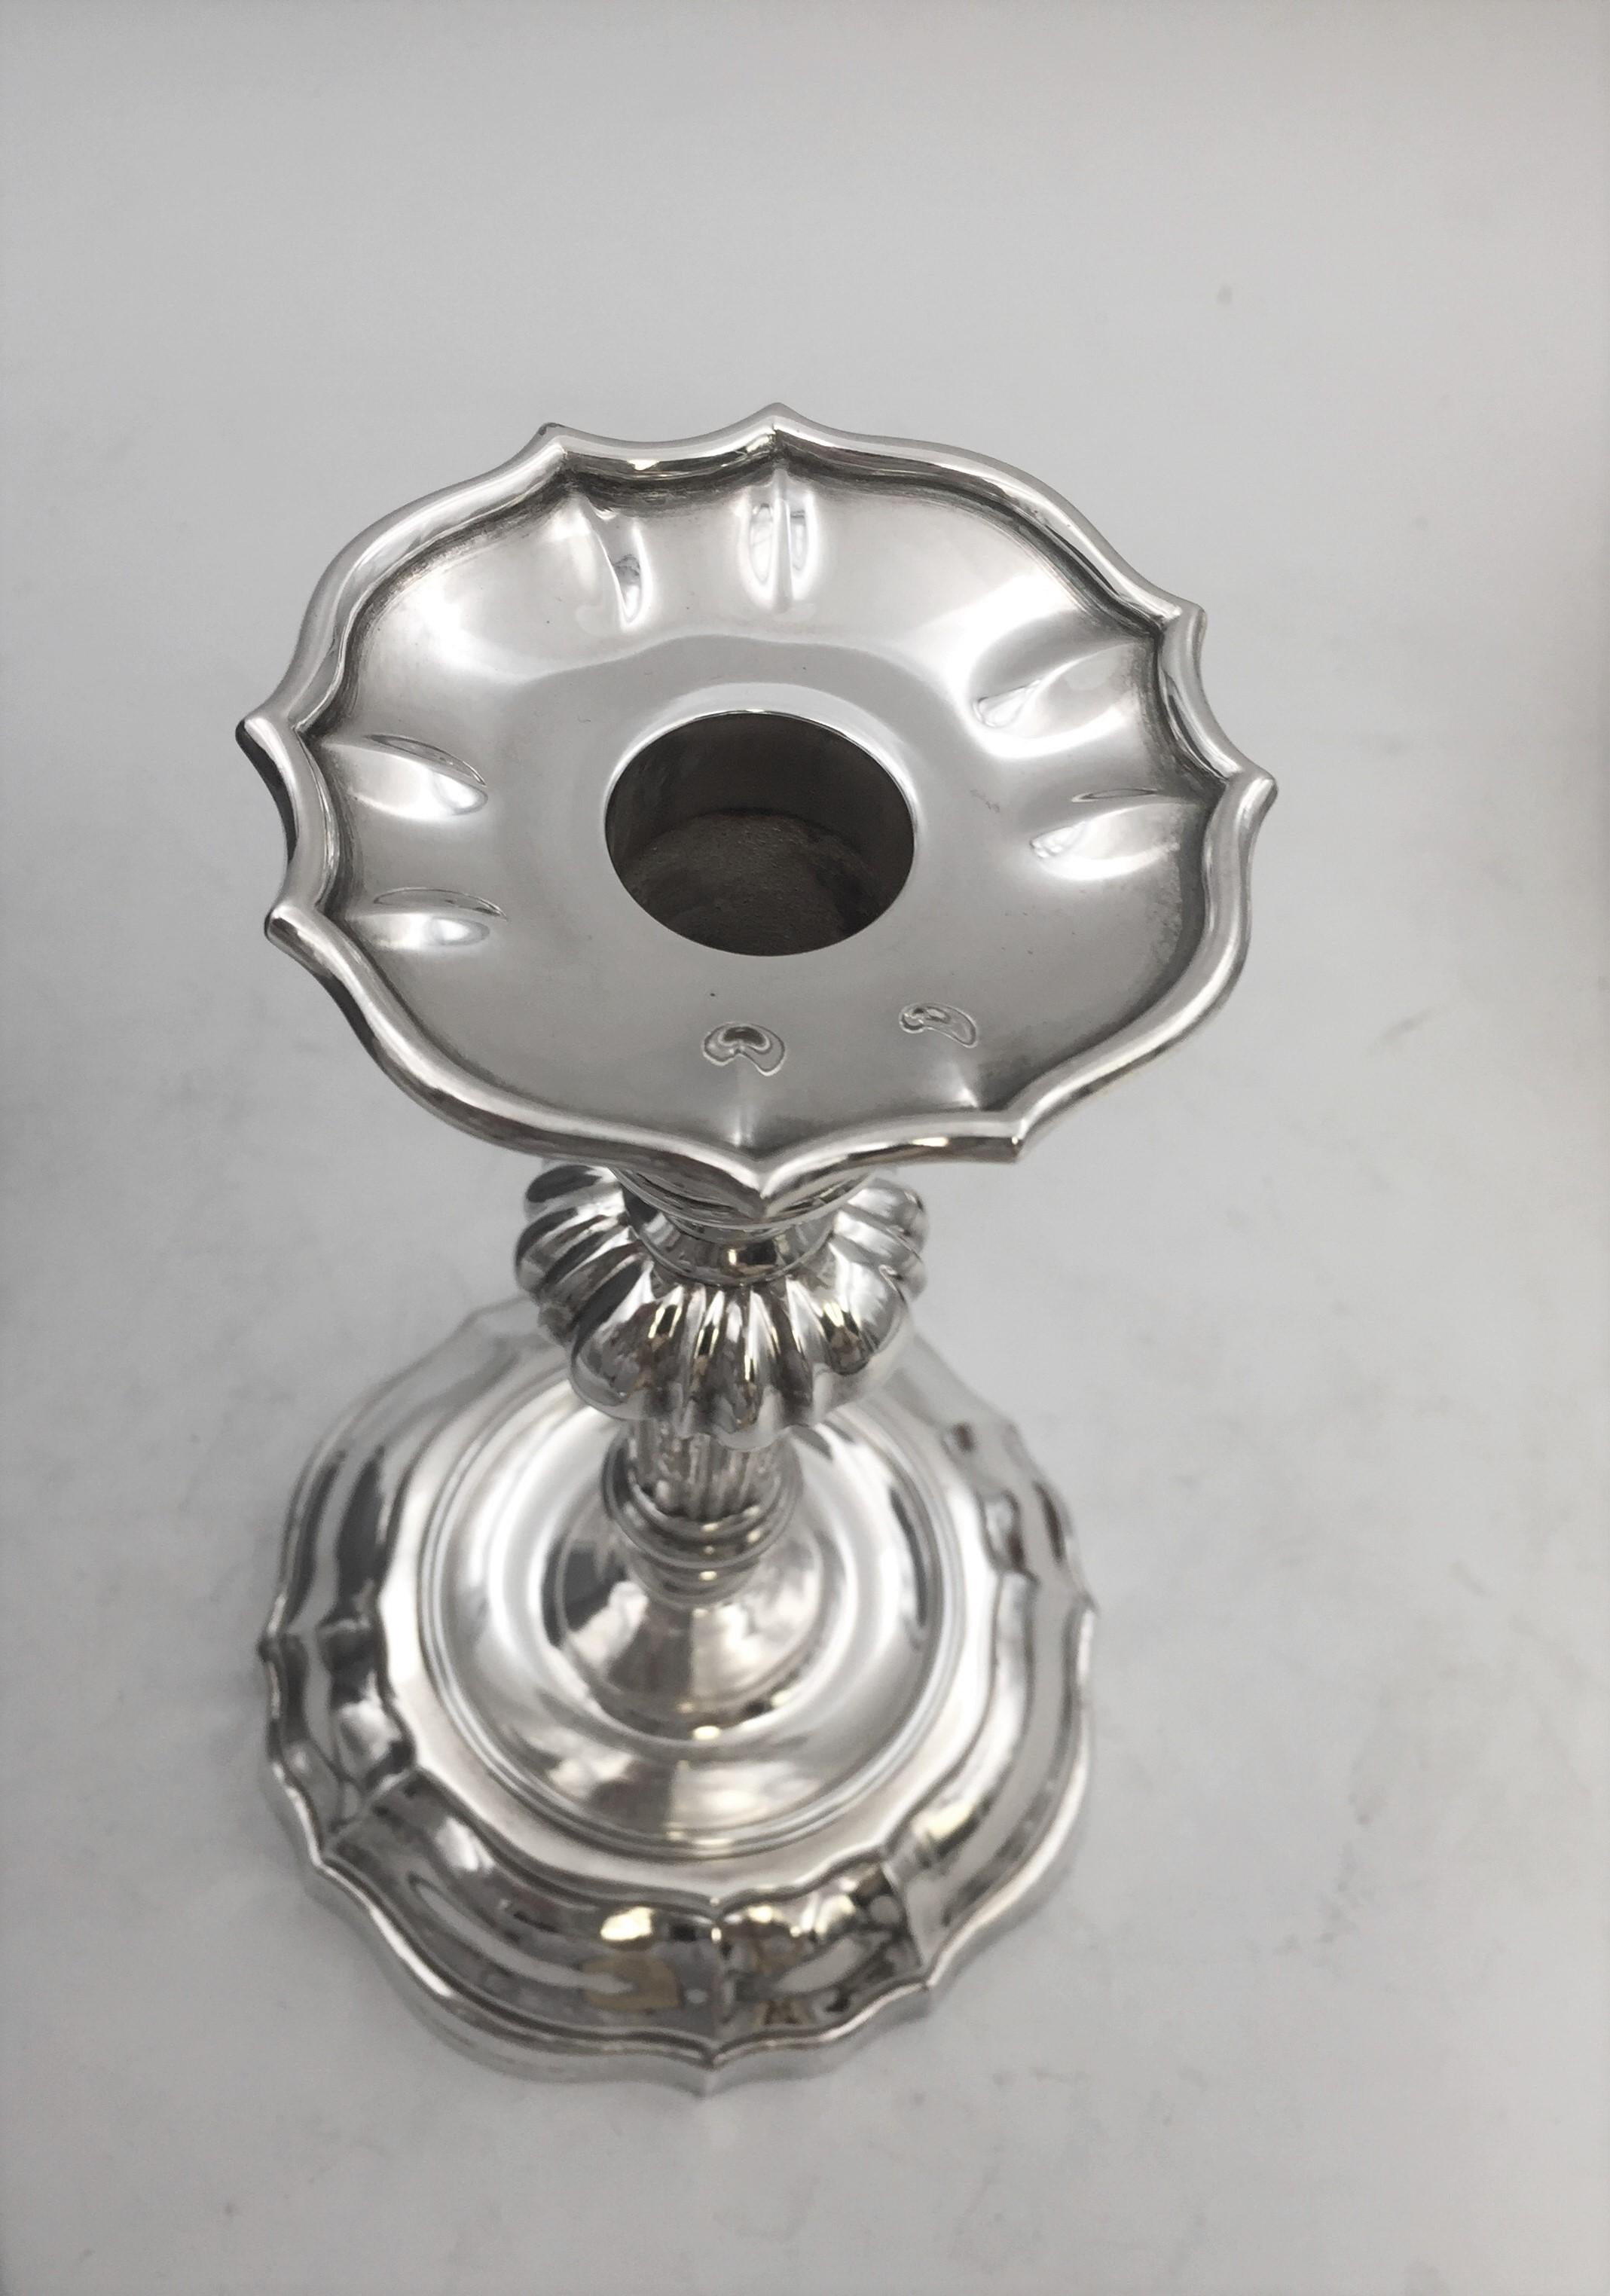 Italian Mario Buccellati Rare Sterling Silver Candlestick